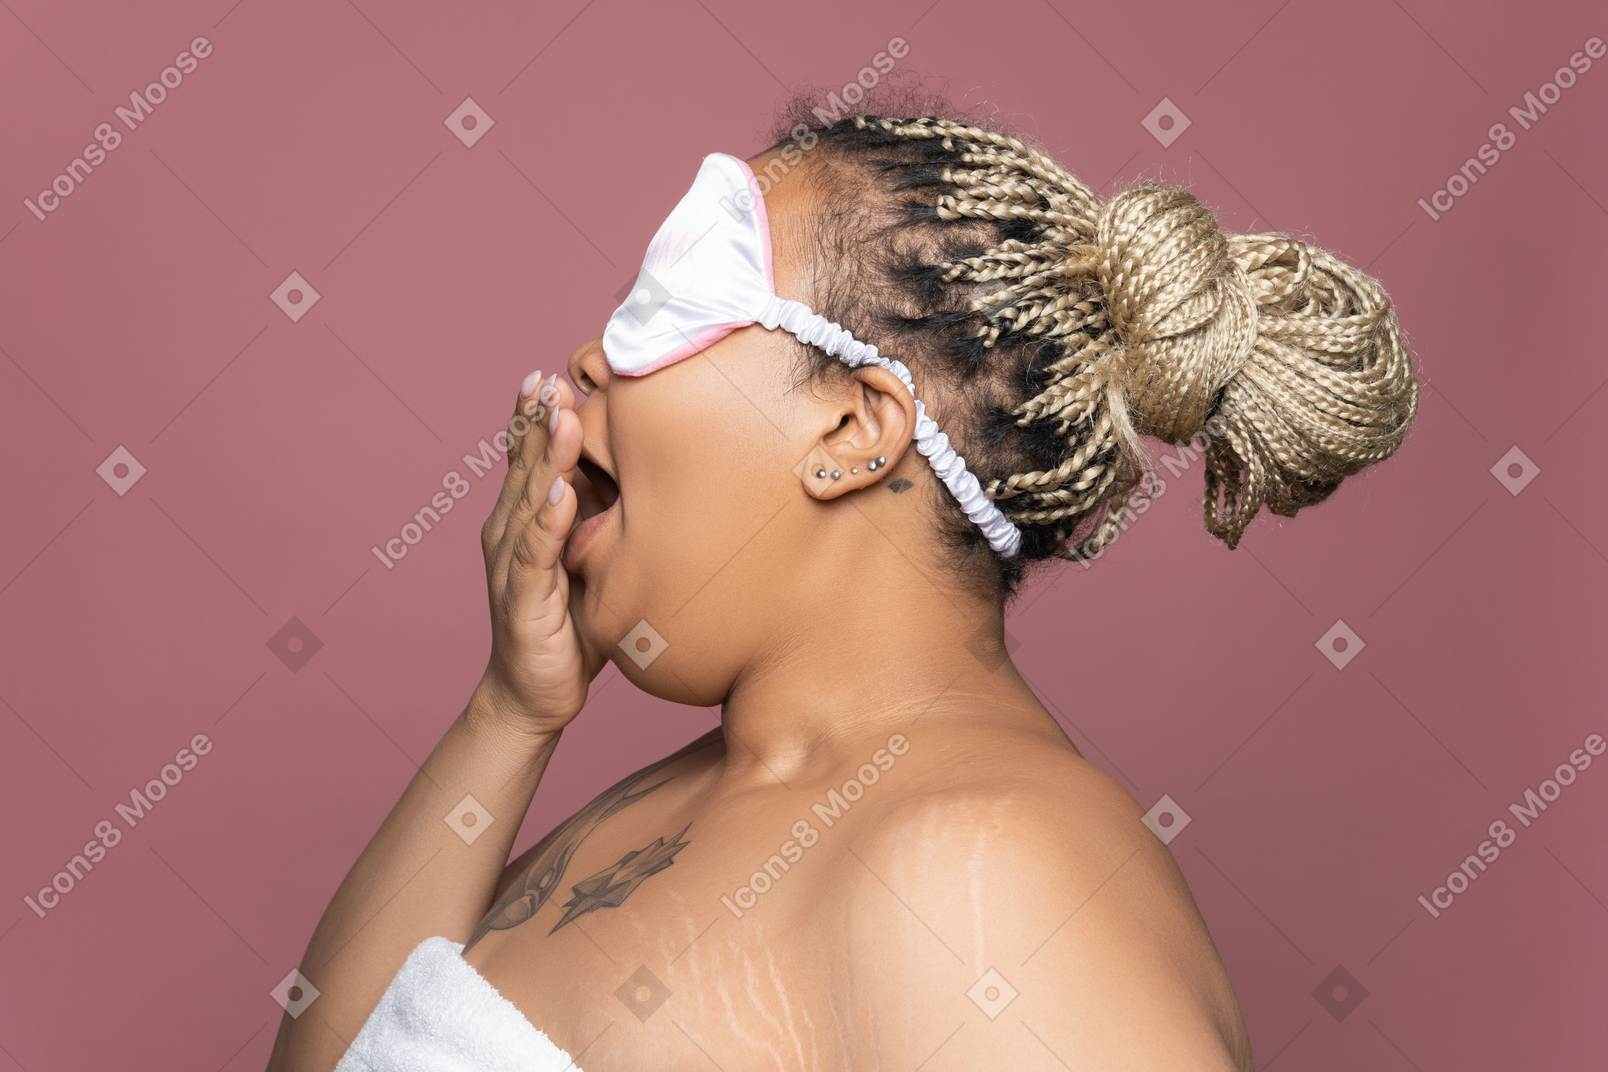 Mulher na máscara de dormir bocejando no perfil